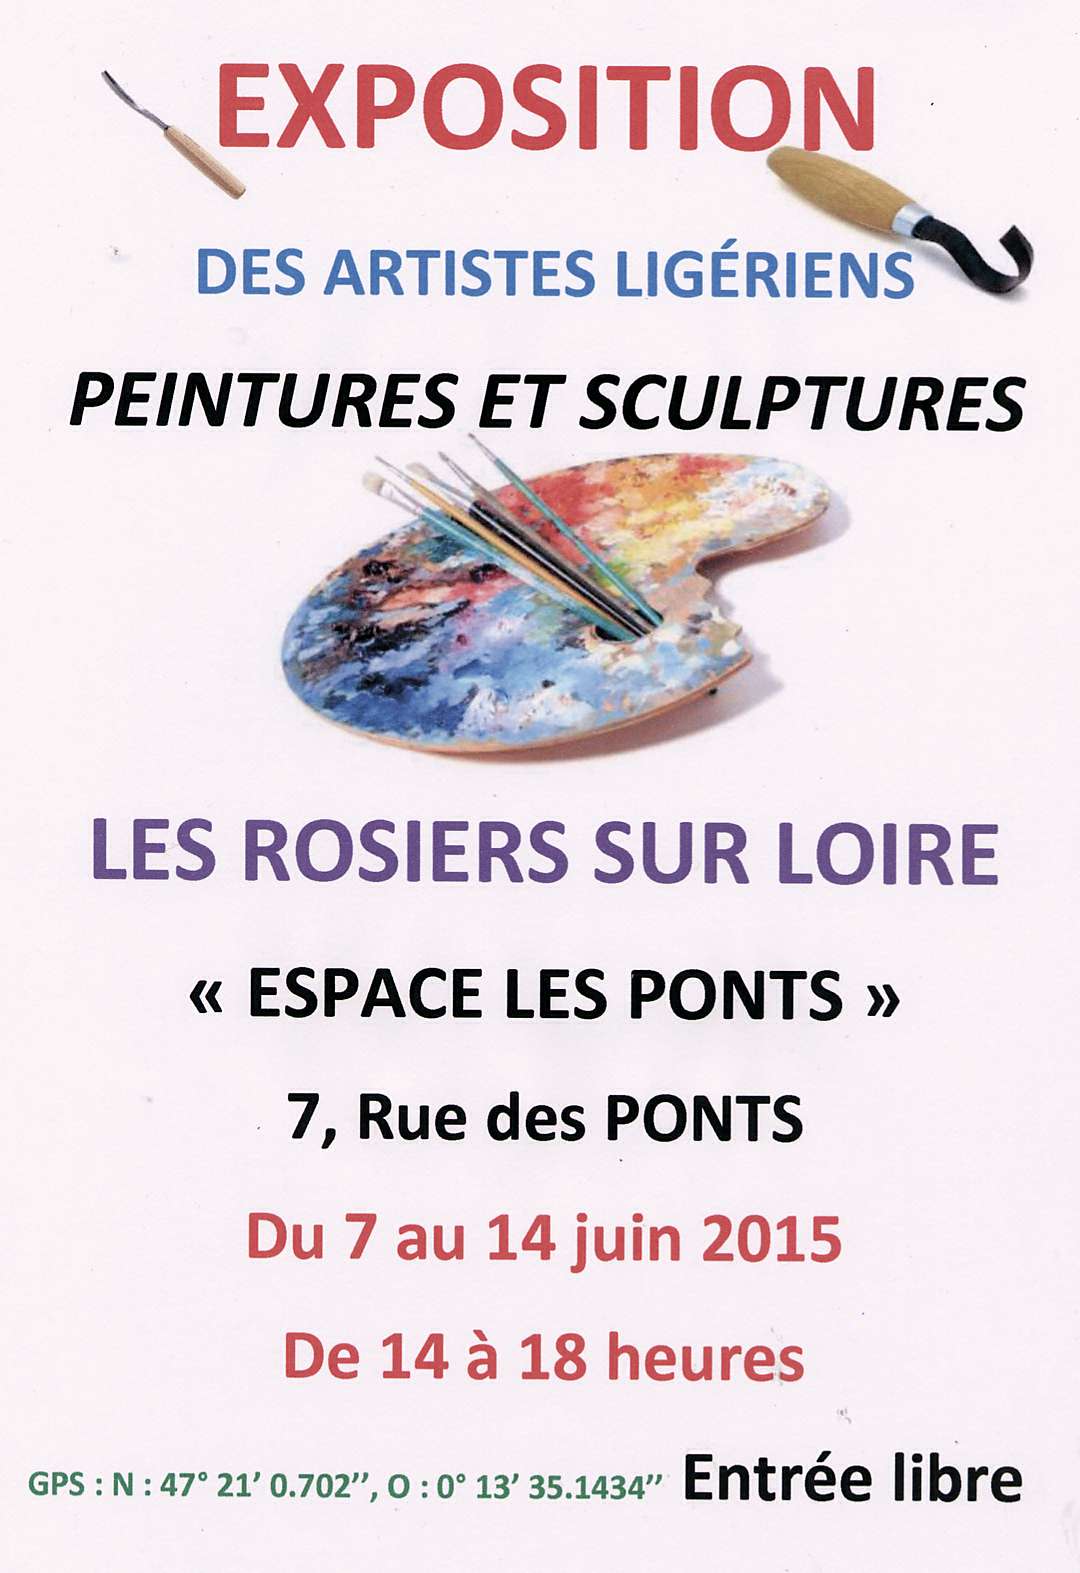 Exposition des Artistes Ligeriens - Les Rosiers-sur-Loire (49)